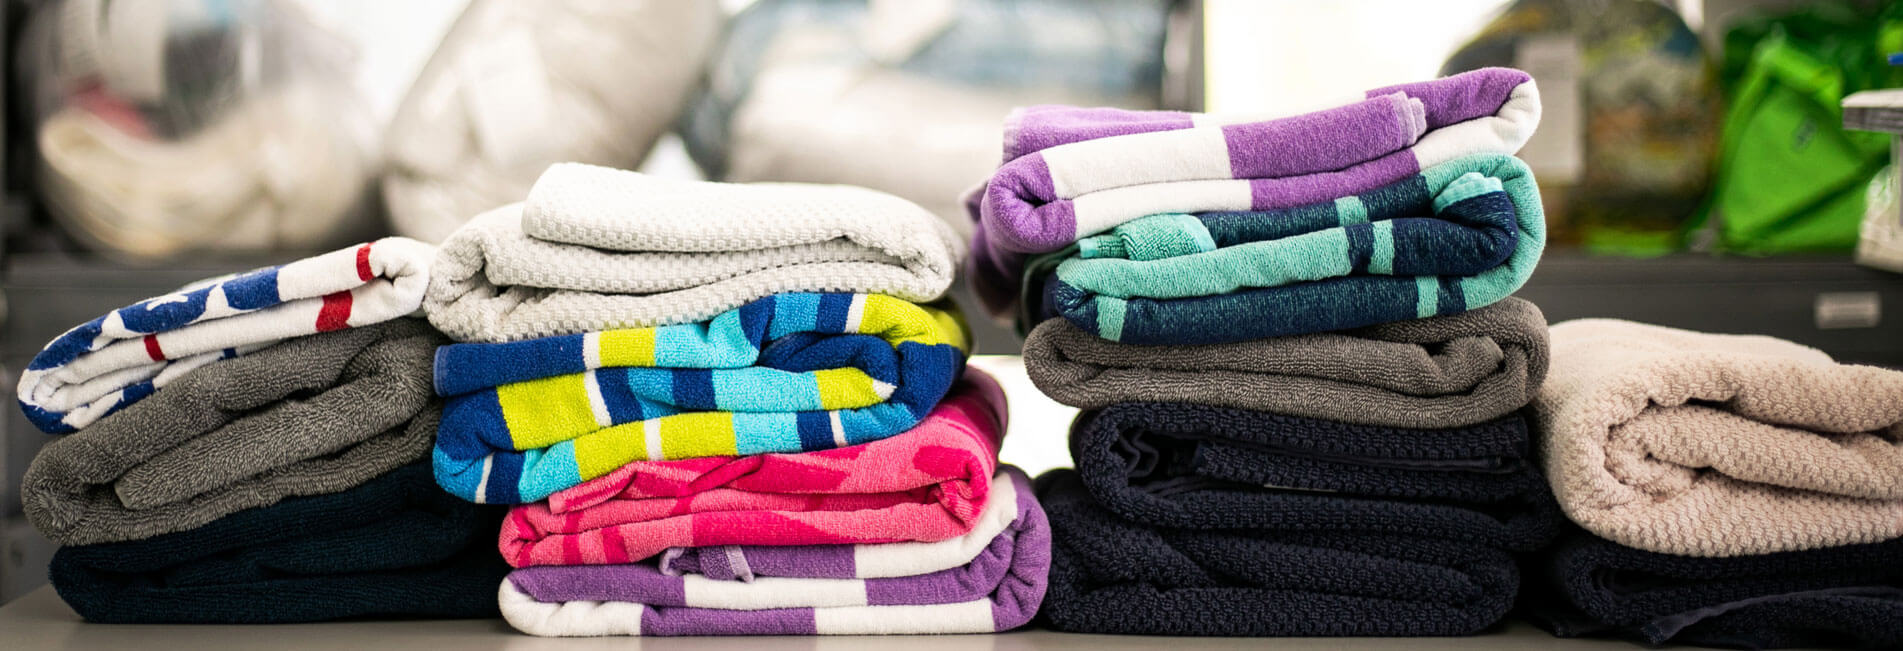 Laundry Fold